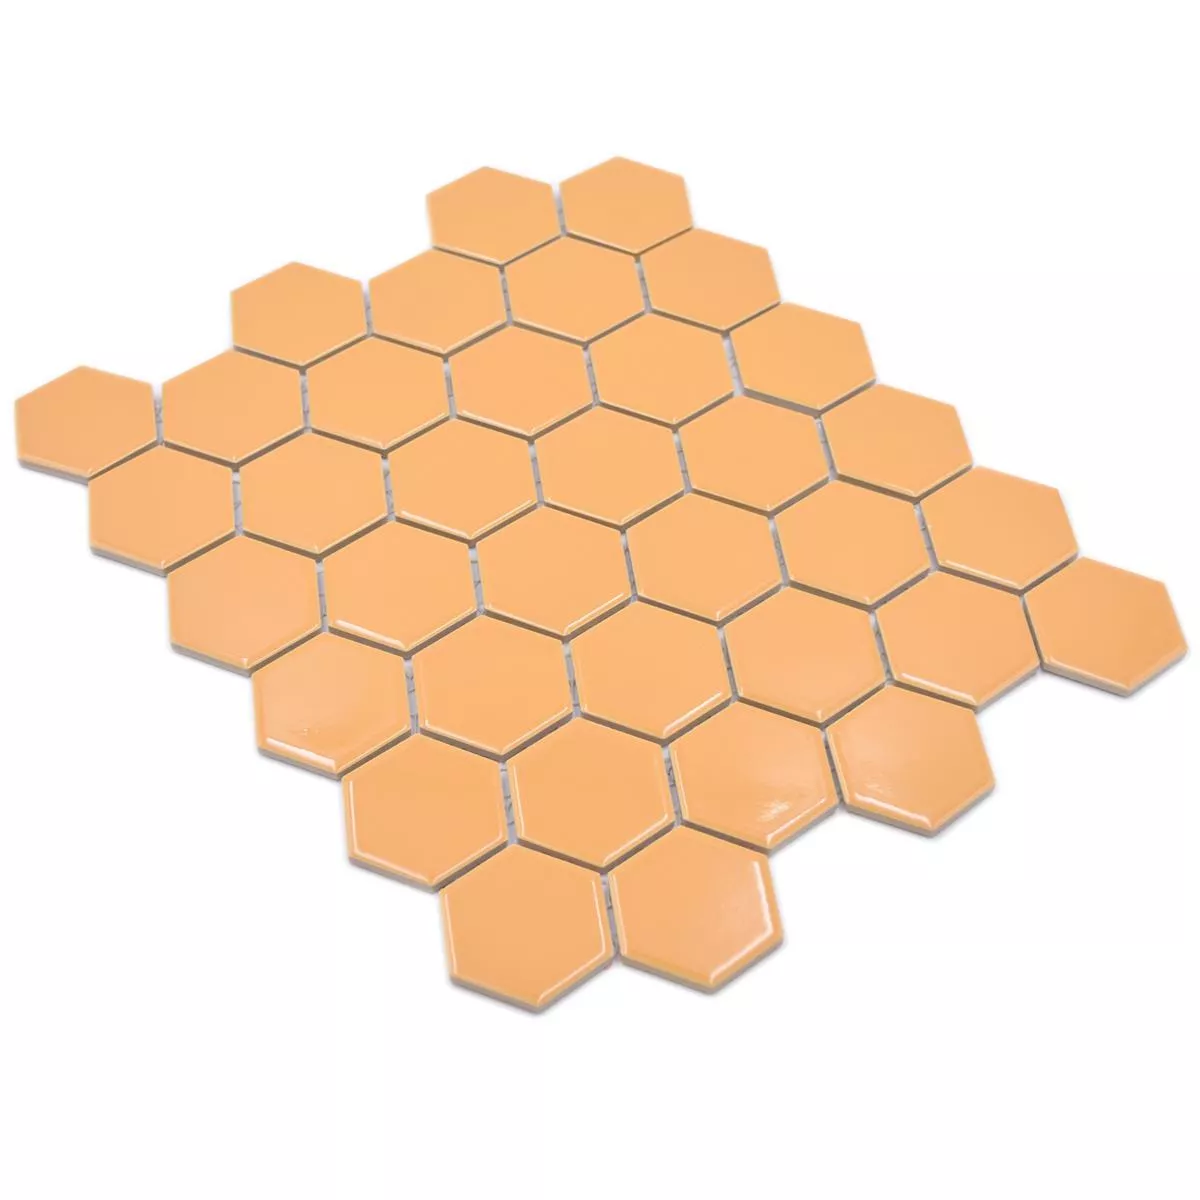 Sample van Keramiek Mozaïek Salomon Hexagon Oker Oranje H51